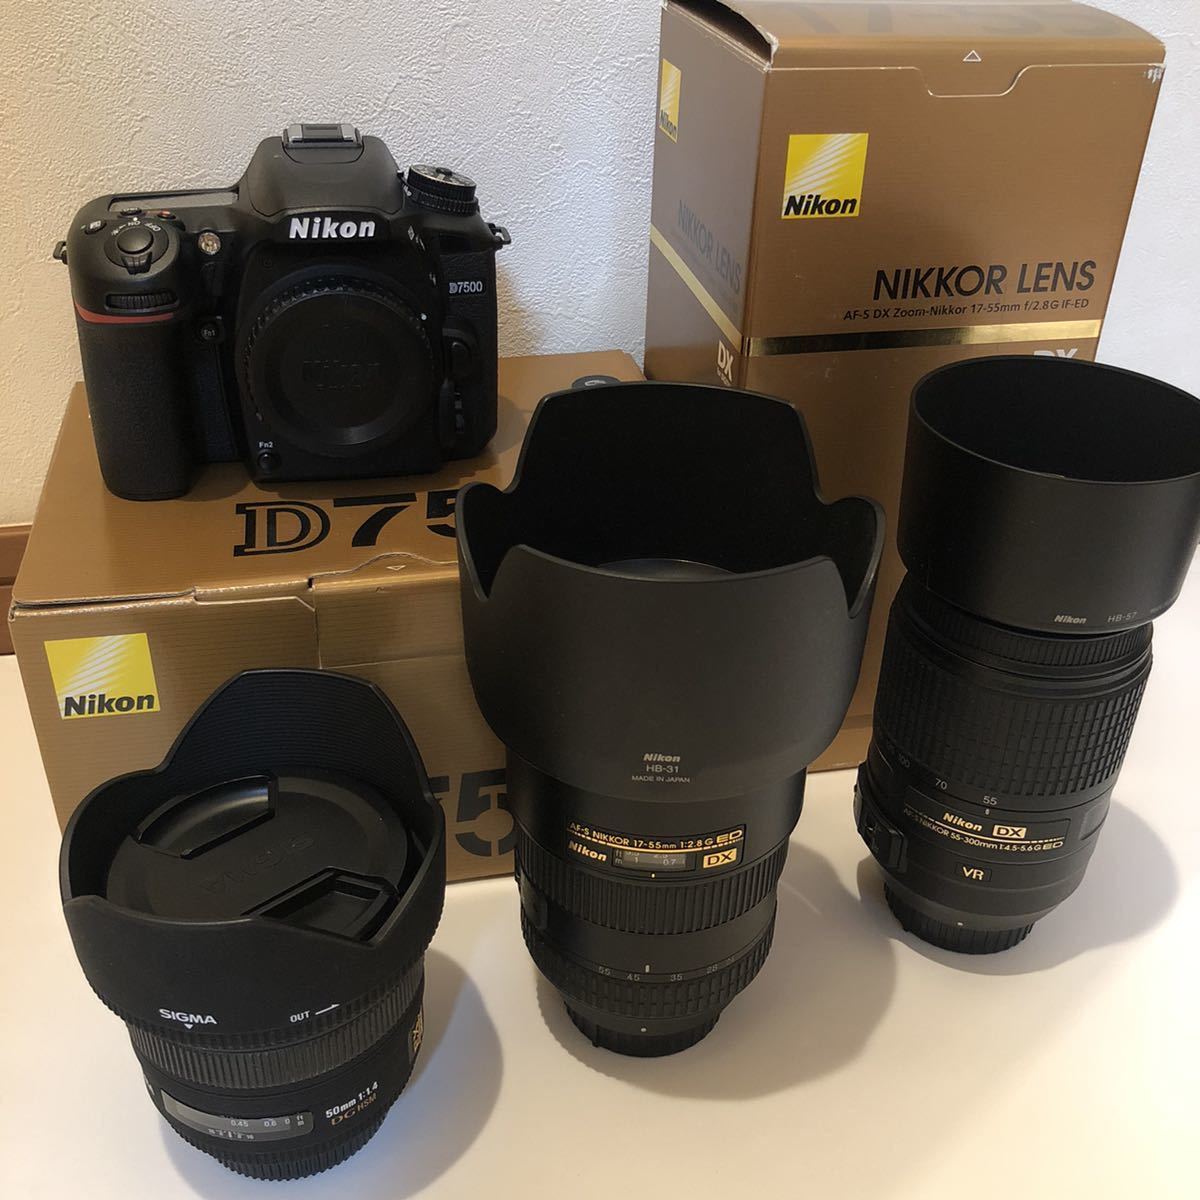 Nikon D7500 AF-S DX Zoom Nikkor 17-55mm f/2.8G IF-ED 55-300mm f